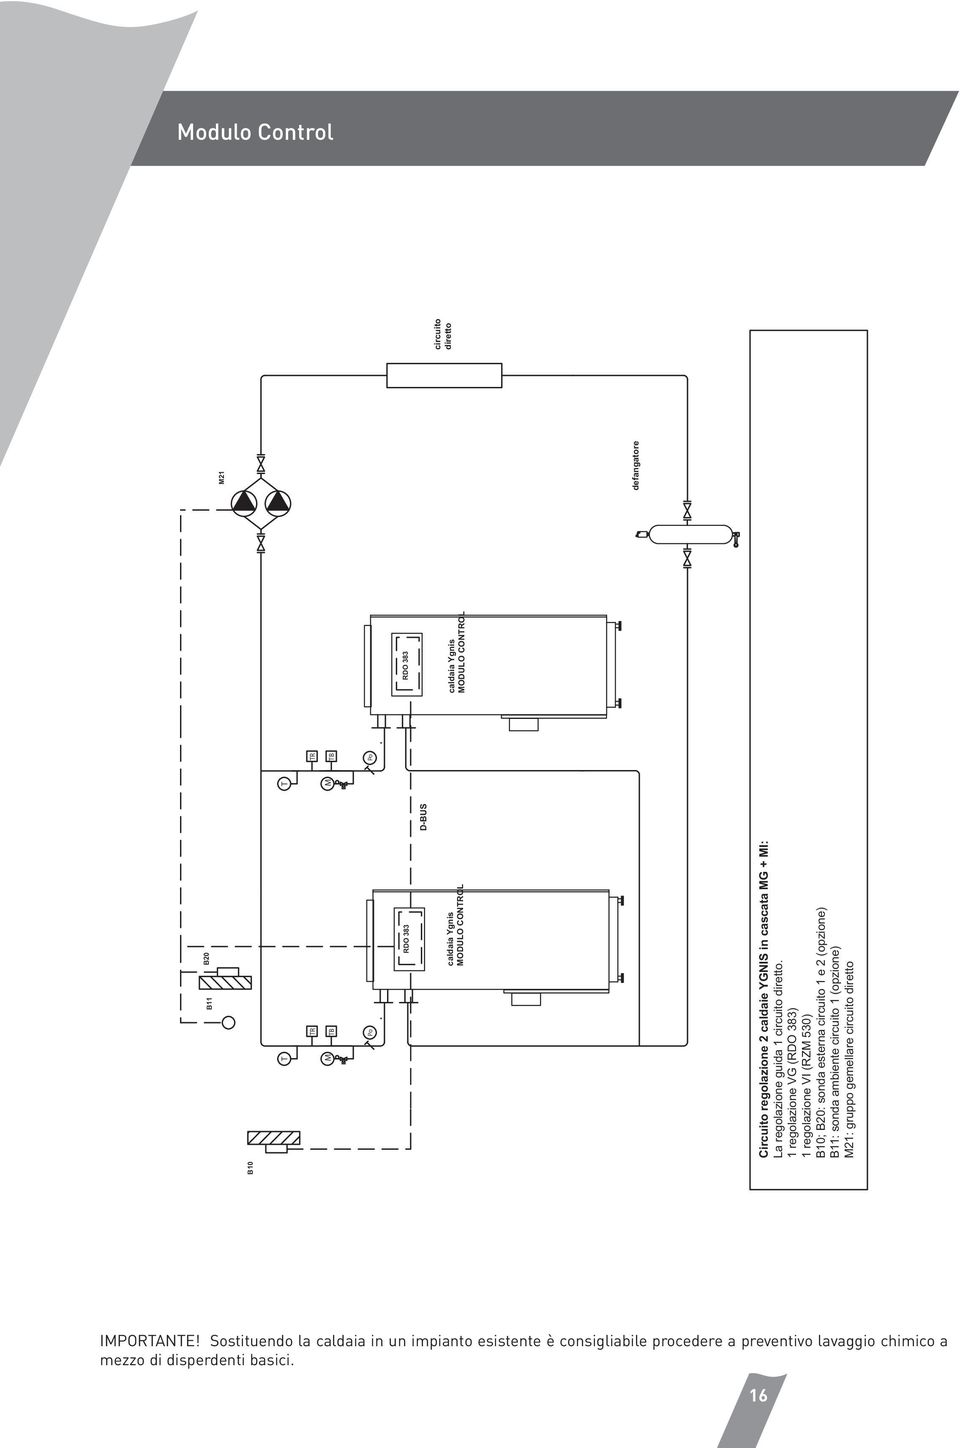 1 regolazione VG (RDO 383) 1 regolazione VI (RZ 530) B10; B20: sonda esterna circuito 1 e 2 (opzione) B11: sonda ambiente